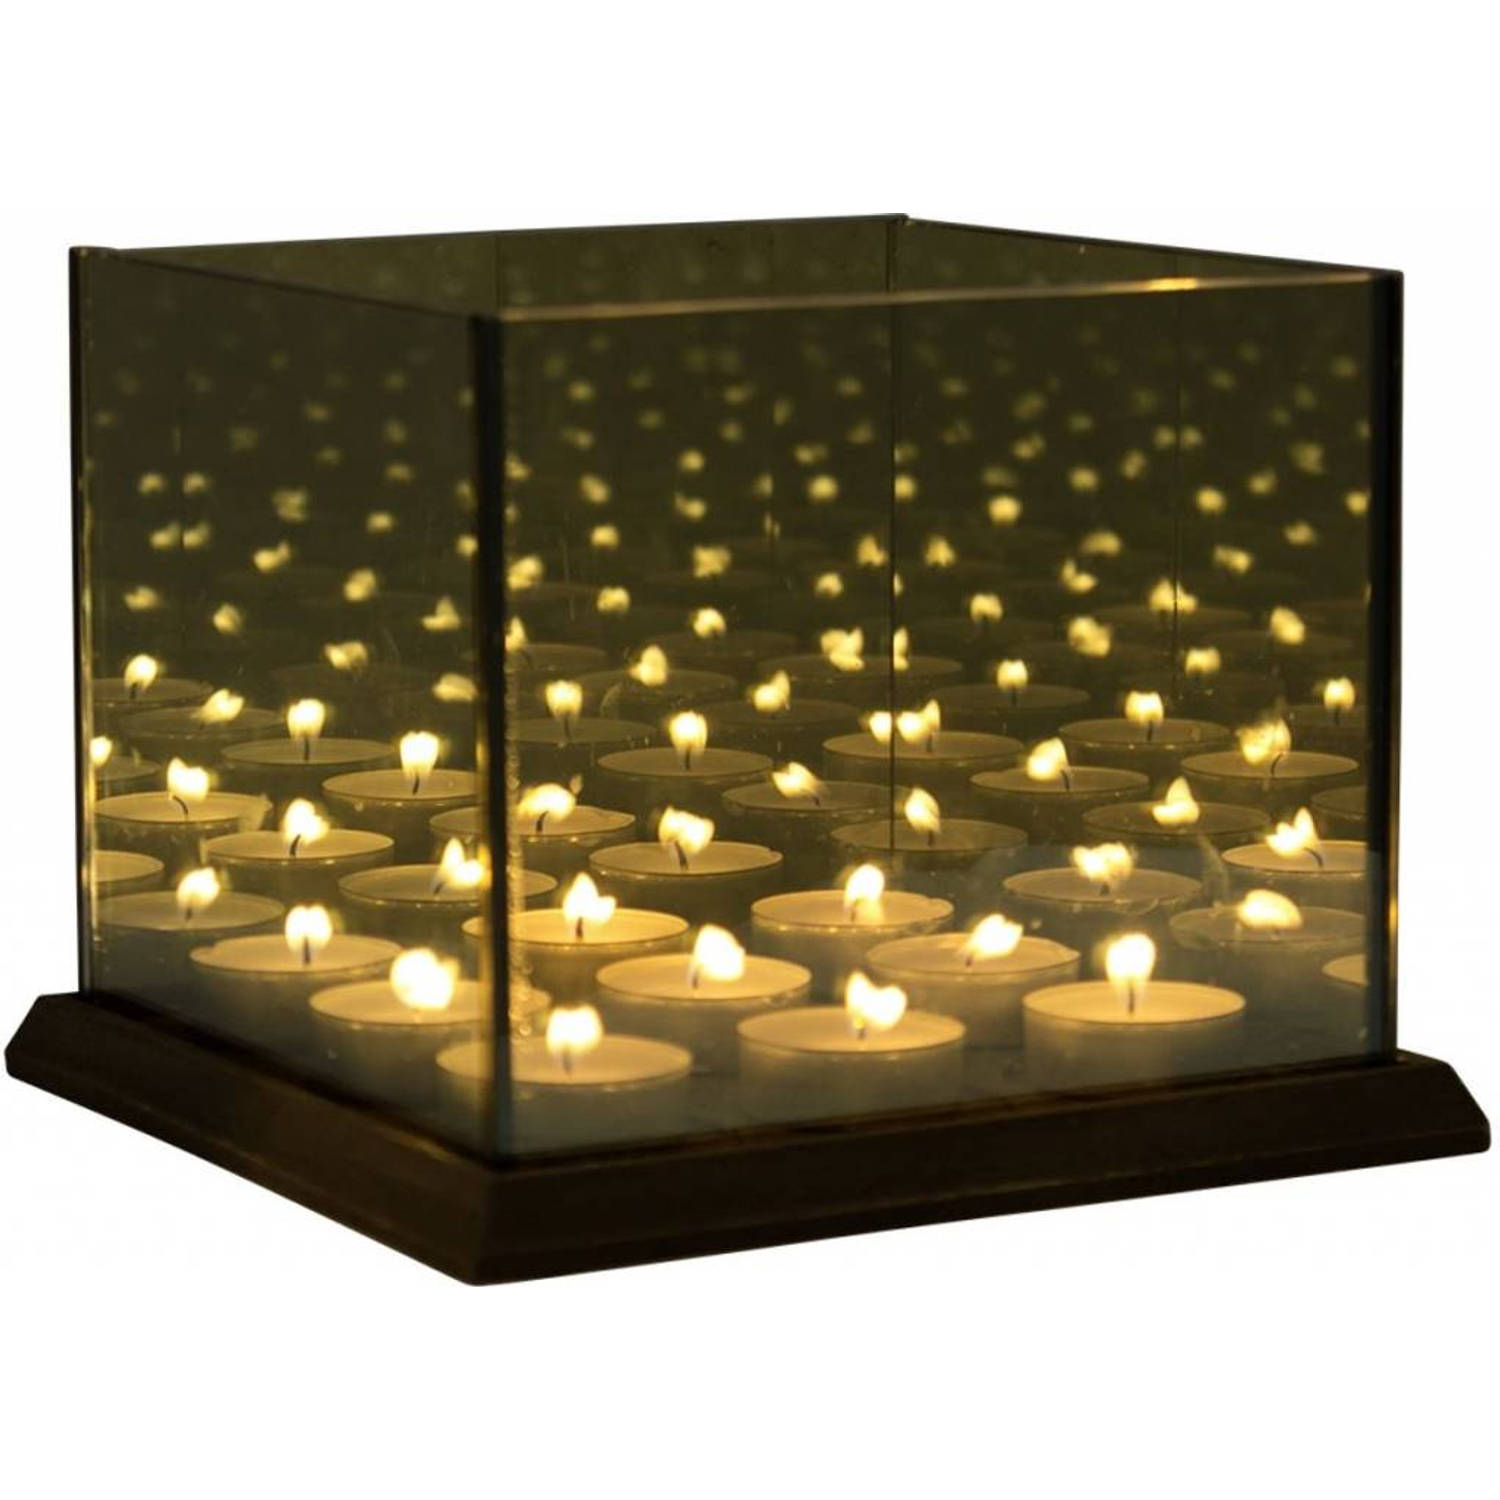 pols extase Het eens zijn met Magic 9 Cube Waxinehouder - Waxinelichthouder Infinity Candle Light -  Oneindig Spiegel Effect - Glas | Blokker